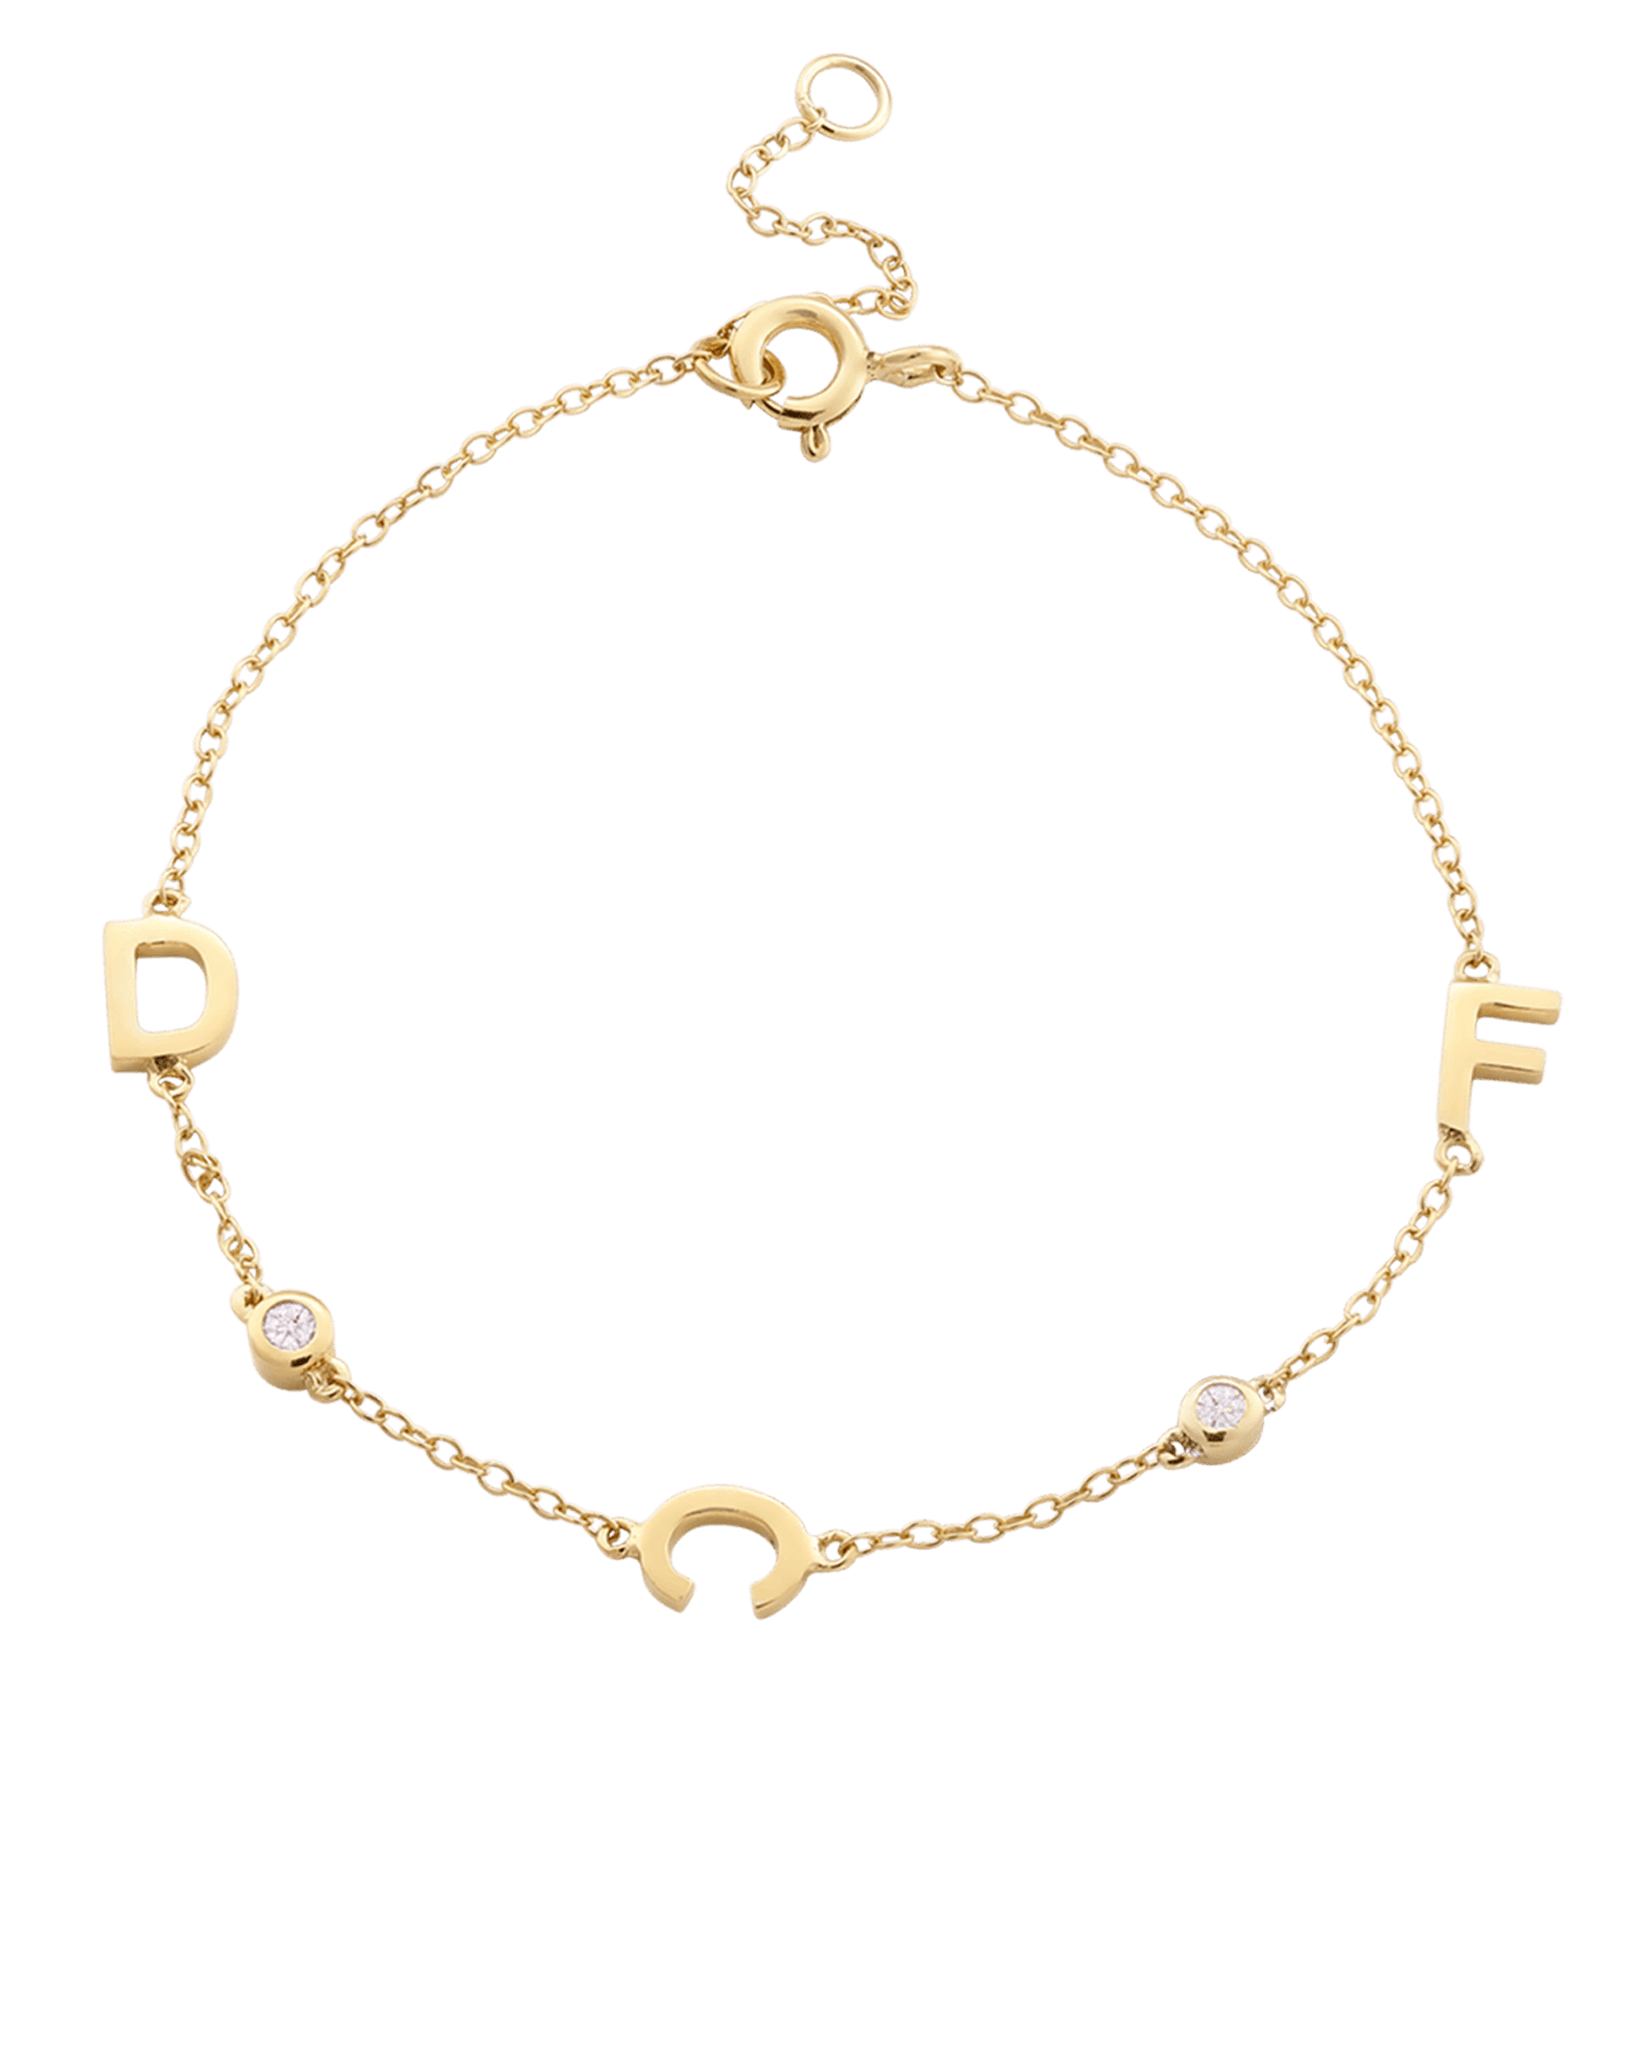 14K Solid Gold Name Bracelet, Solid Gold Letter Initial Bracelet, 18K Family Name Bracelet, Custom Made Gift for Her, Best Gift for Mother's